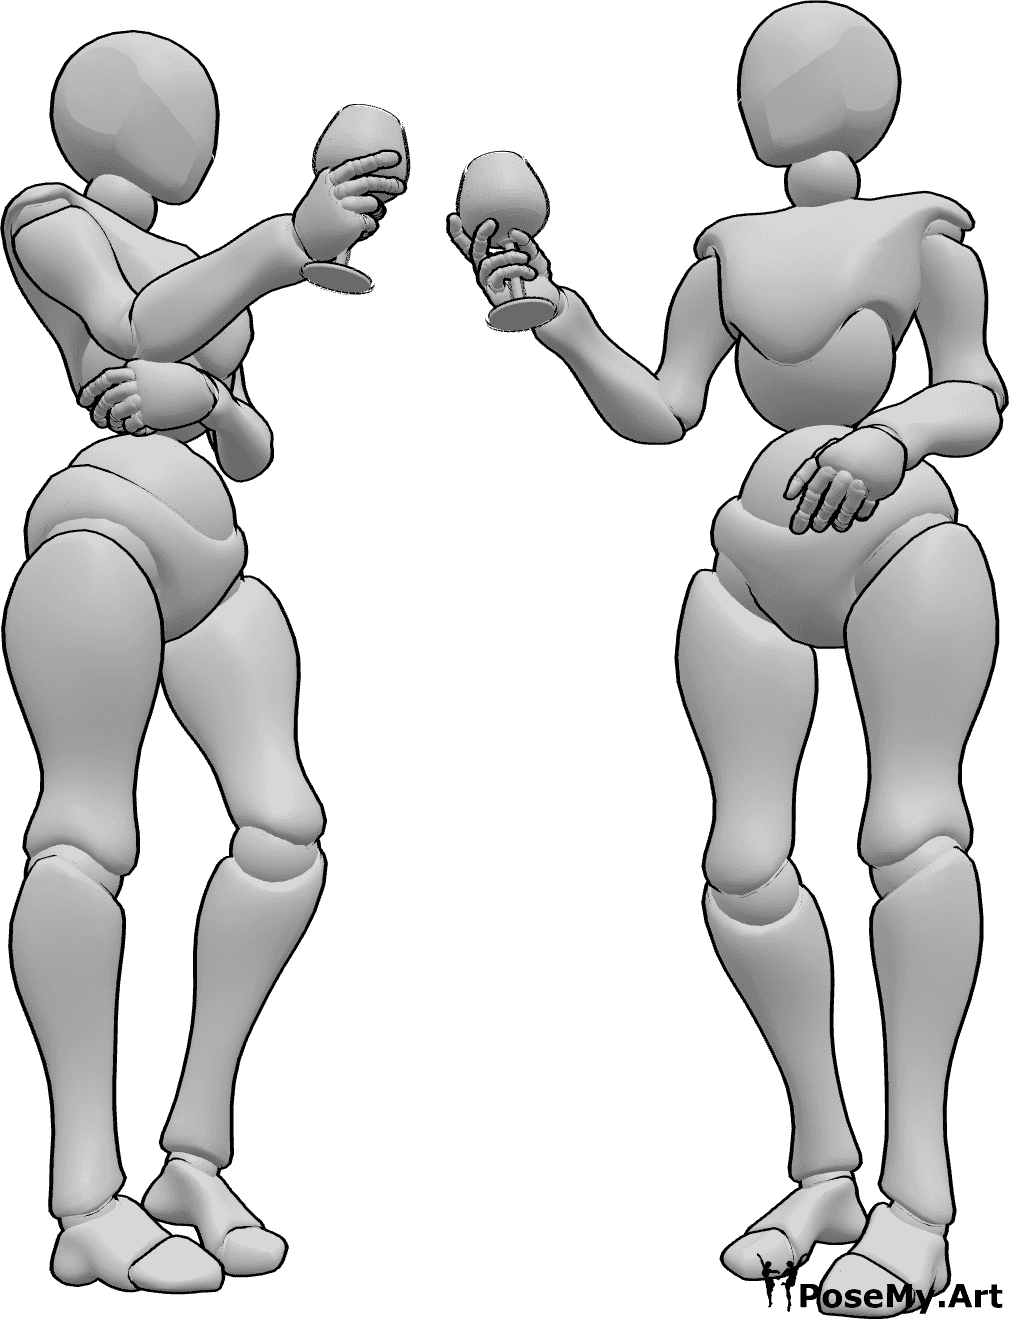 Referencia de poses- Postura de brindis femenino - Dos mujeres están de pie y brindando antes de beber, bebiendo referencia